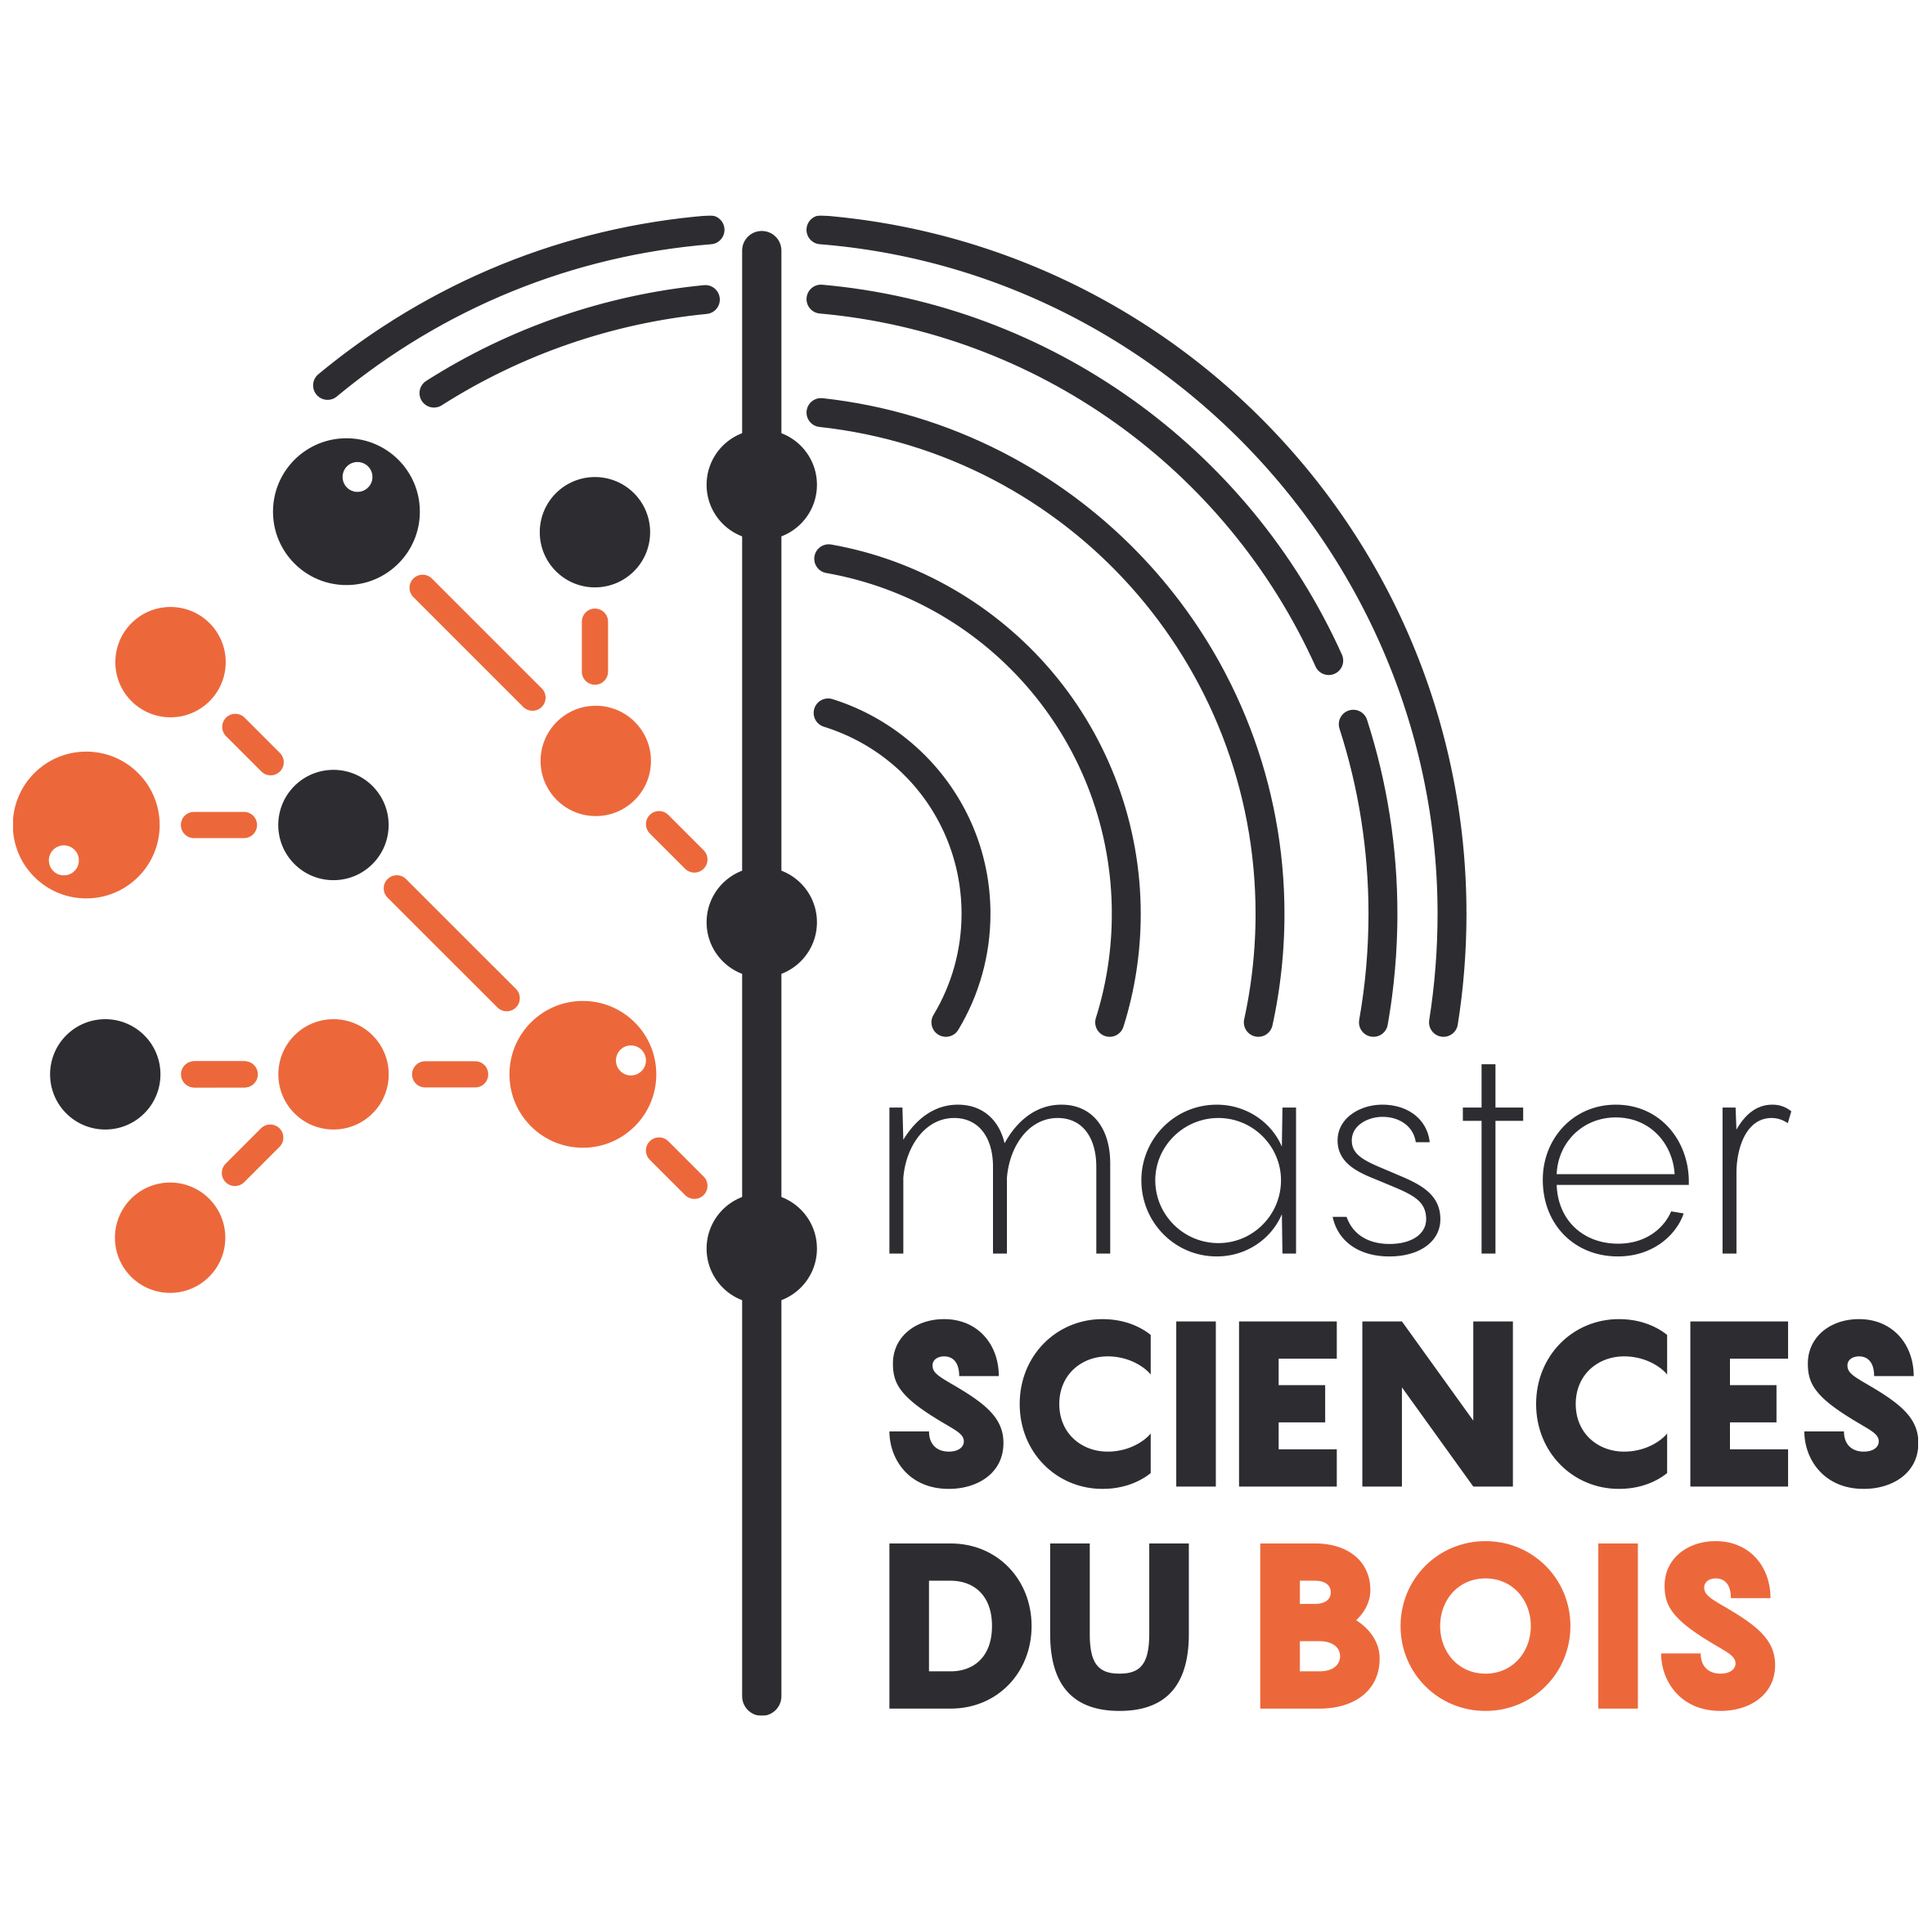 logo msaster sciences du bois